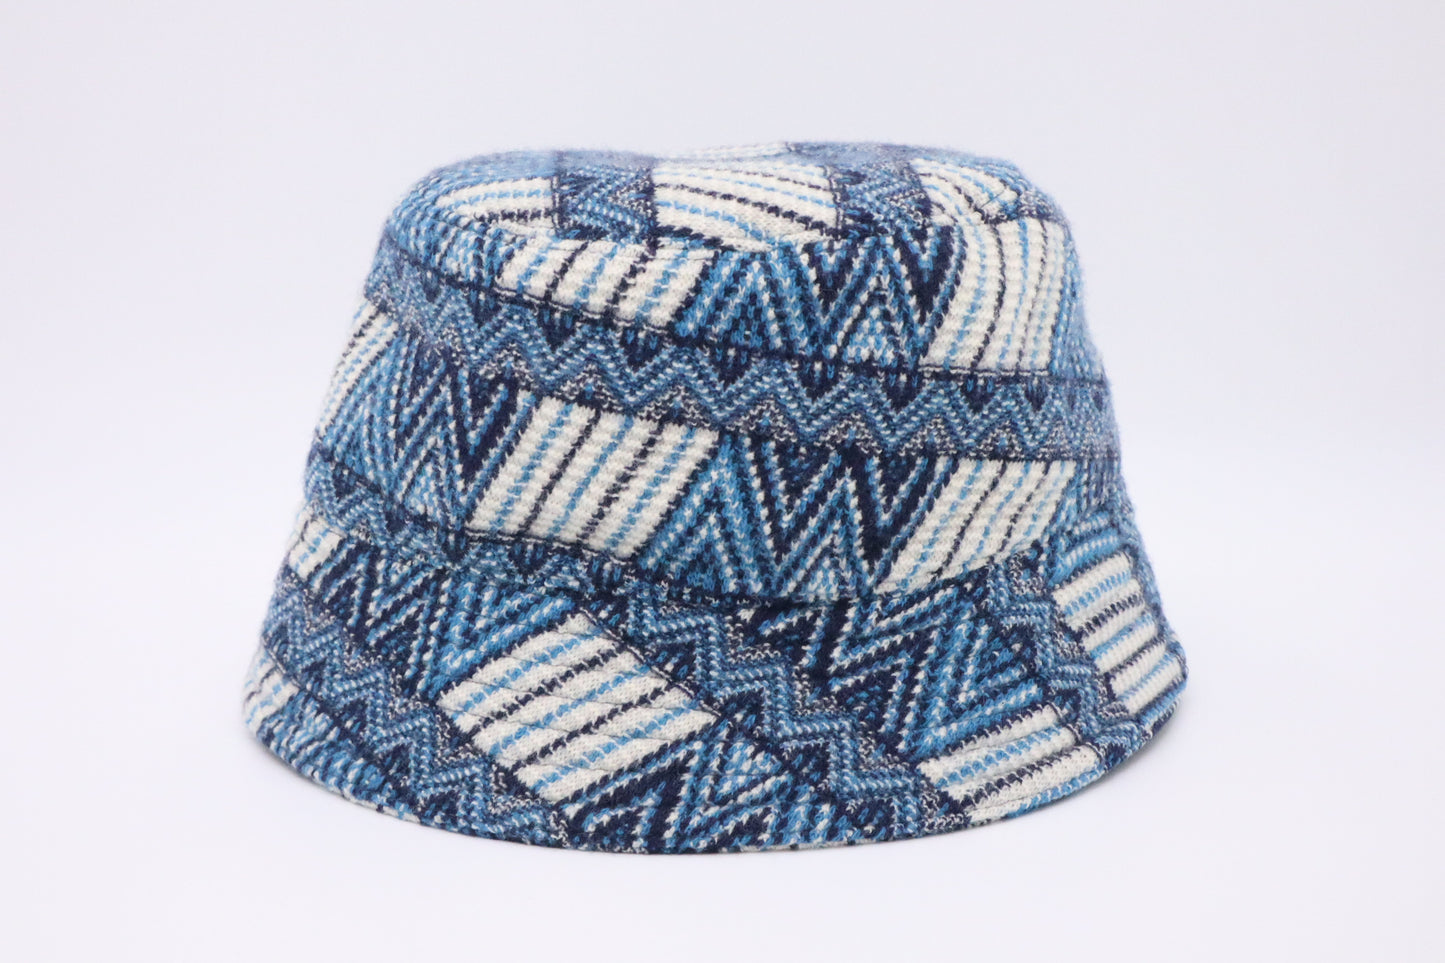 Prada Bucket Hat in Blue Wool & Cashmere